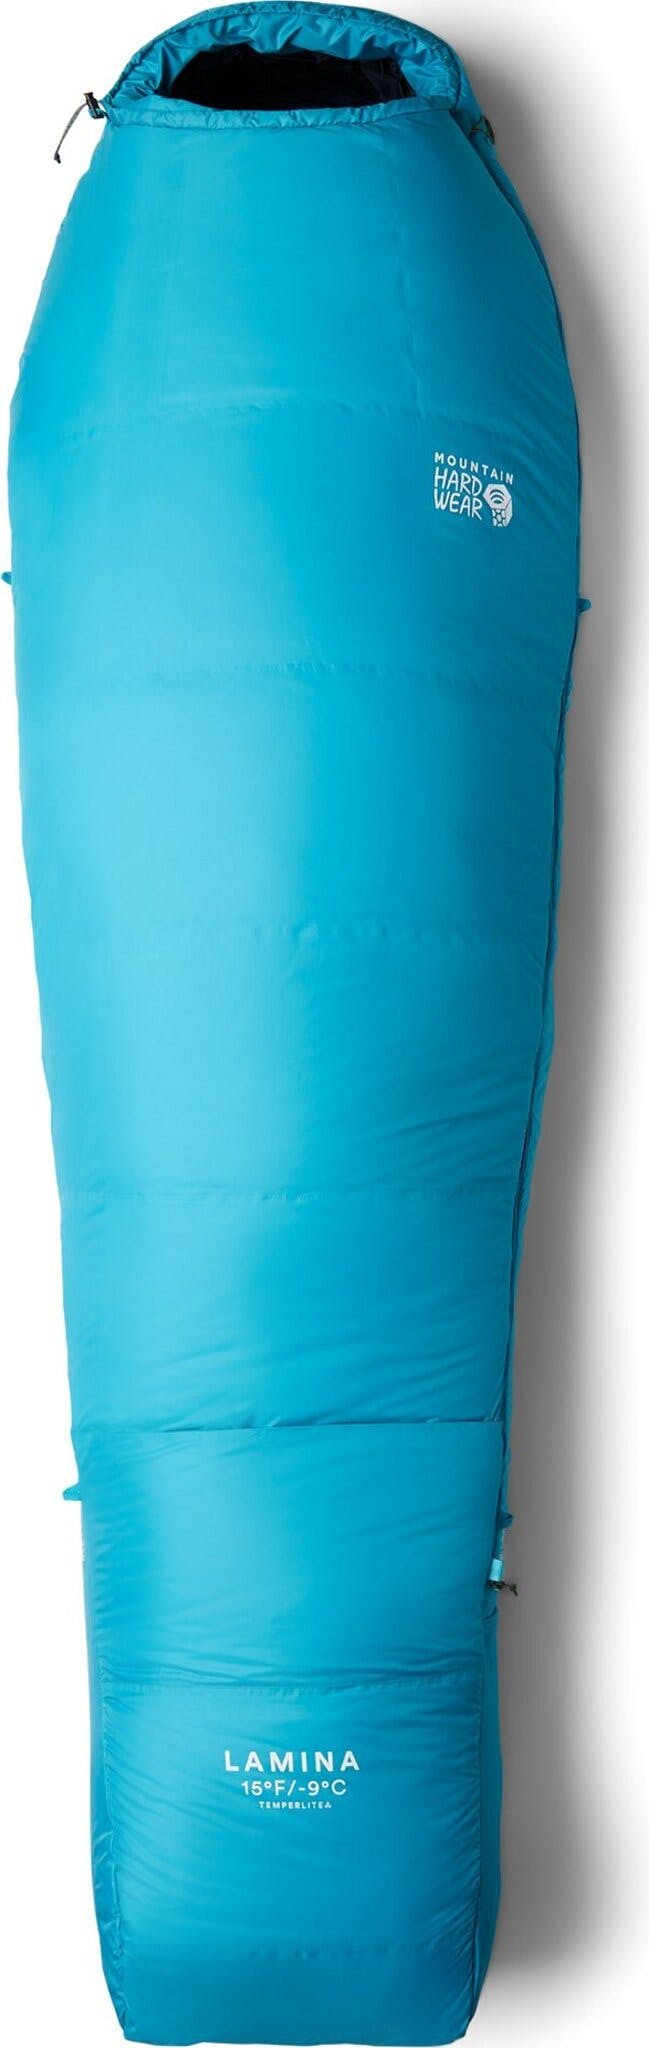 Product image for Lamina Extra Long Sleeping Bag -15°F/-9°C - Unisex